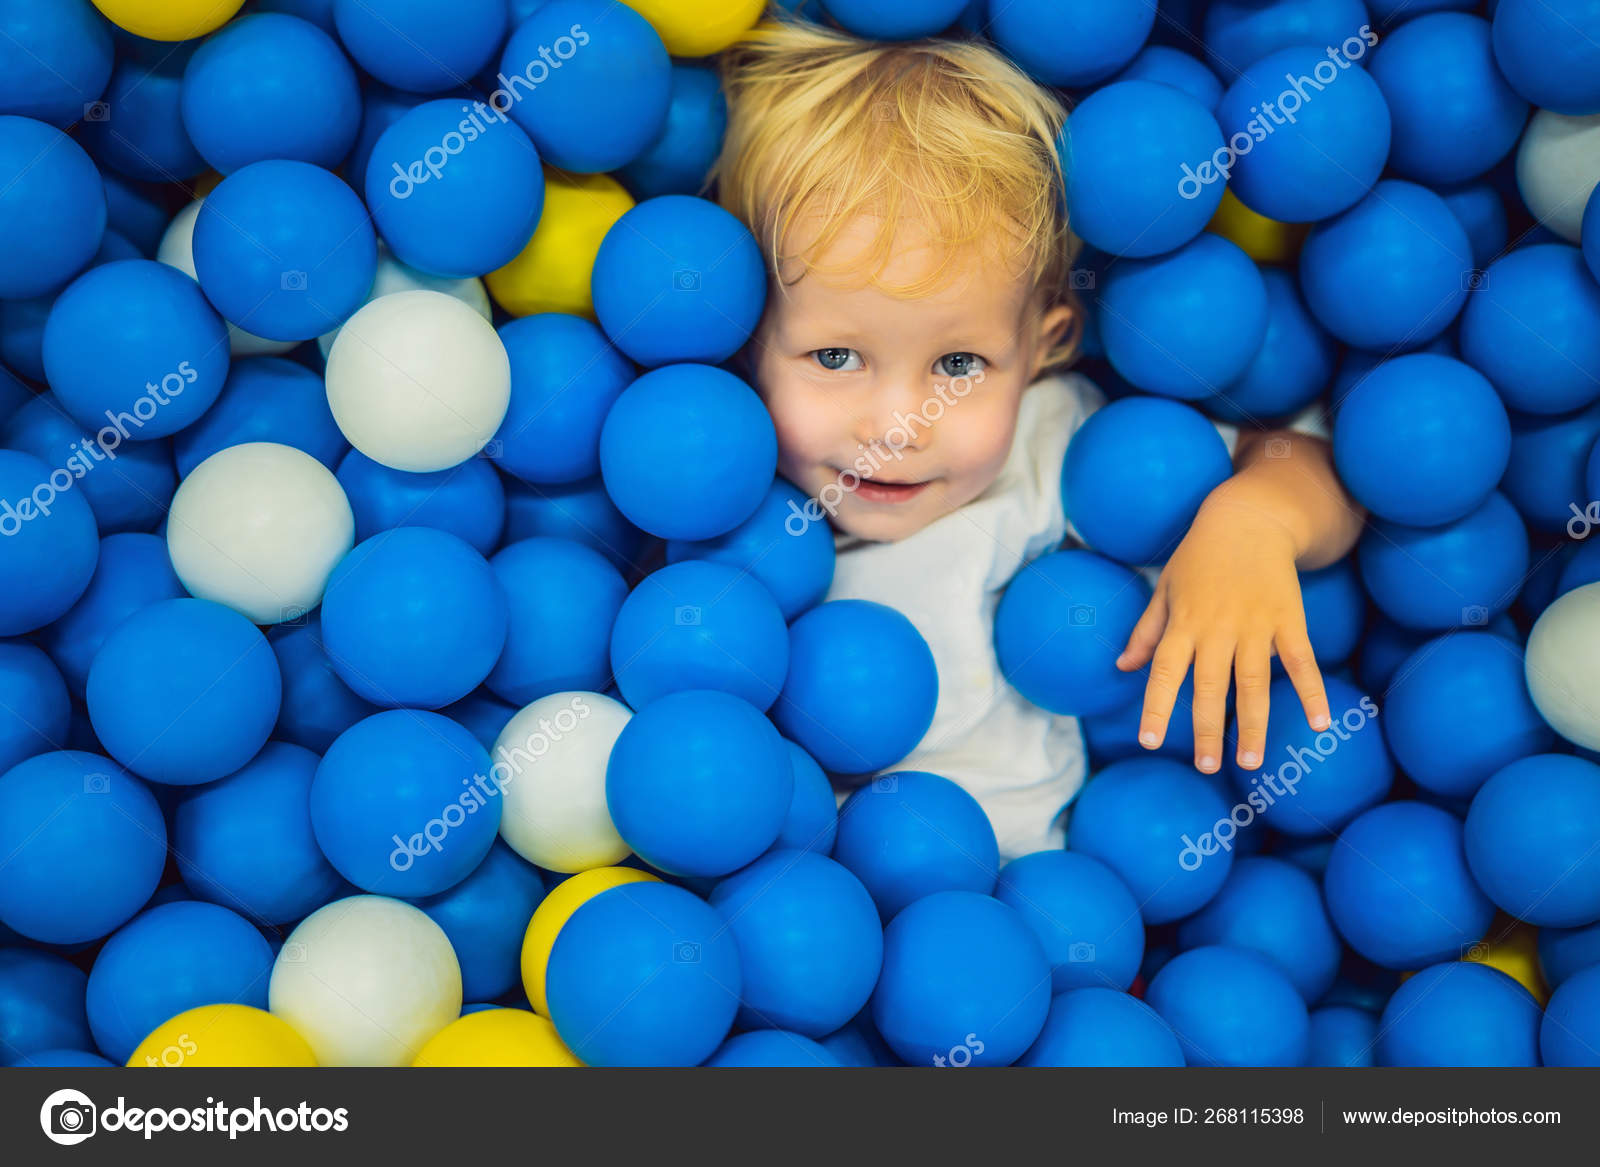 Bolas Coloridas No Campo De Jogos Imagem de Stock - Imagem de